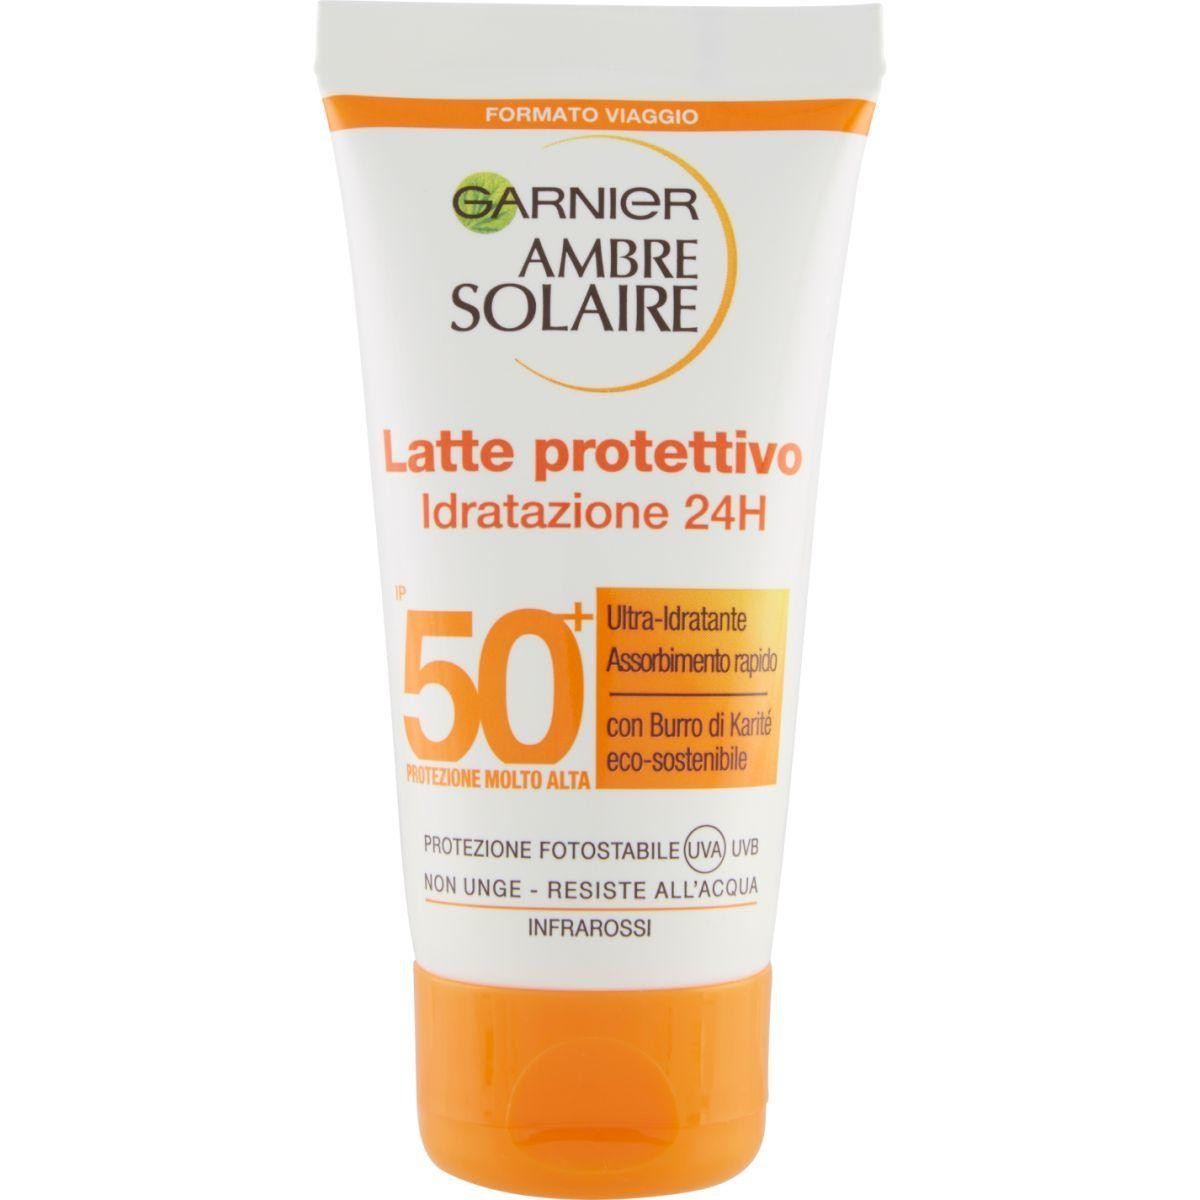 Garnier Ambre Solaire Mini latte protettivo ultra-pratico IP 50, 50 ml